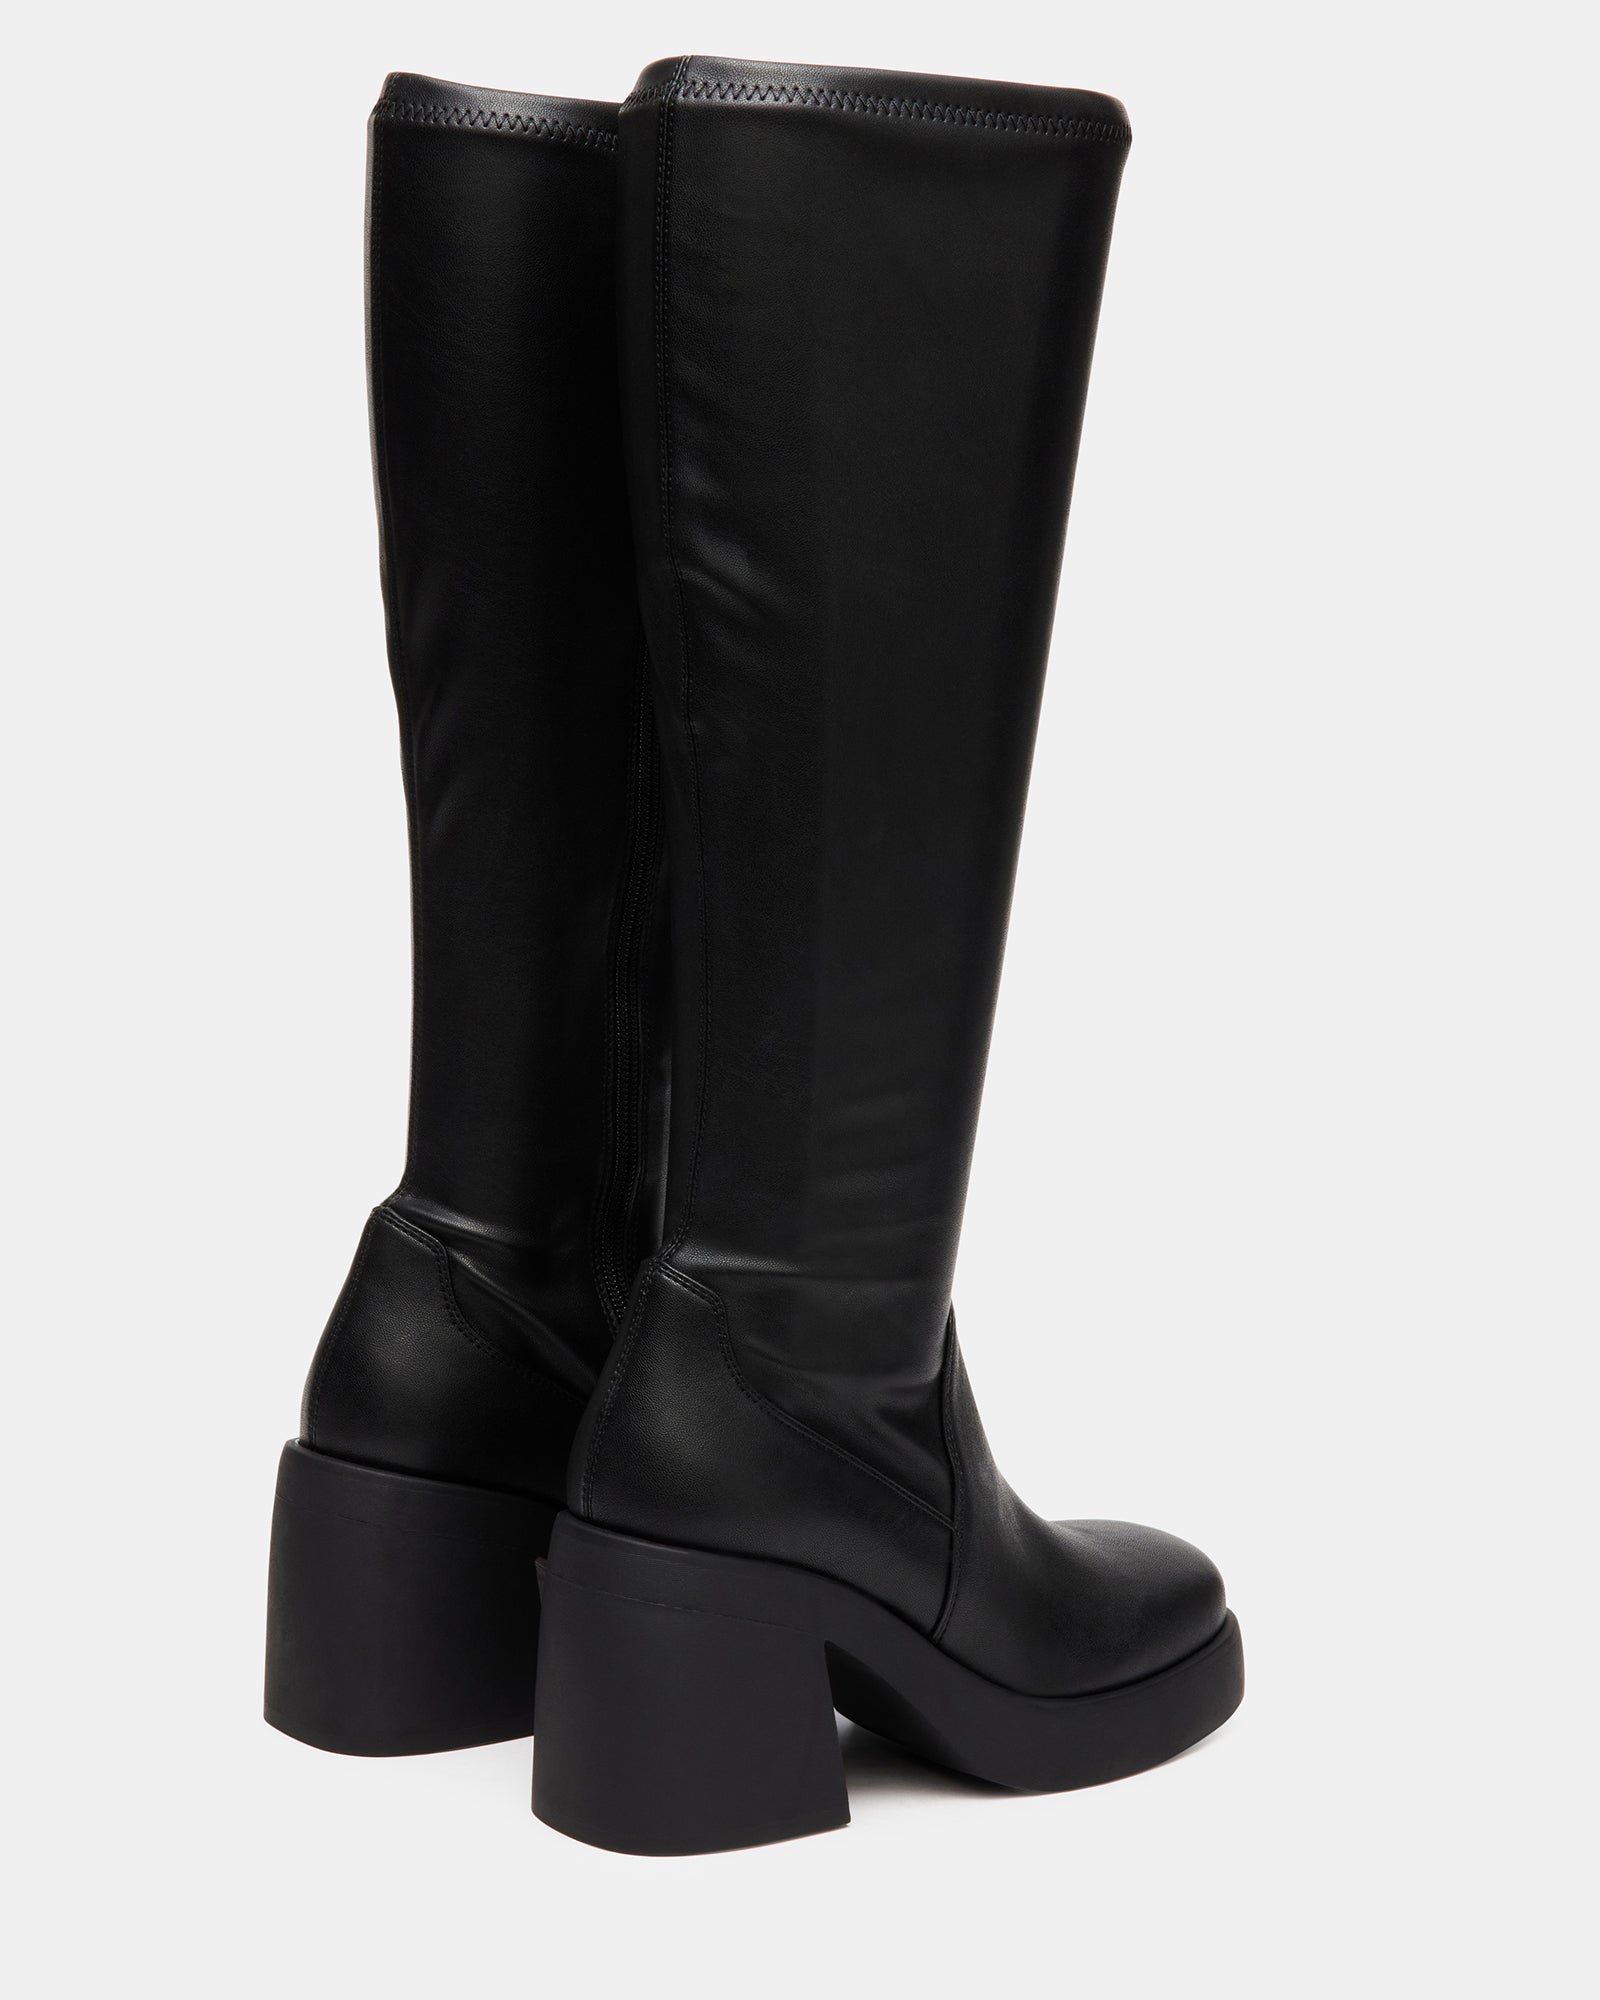 BERKLEIGH Black Wide Calf Knee High Boot | Women's Platform Boots ...